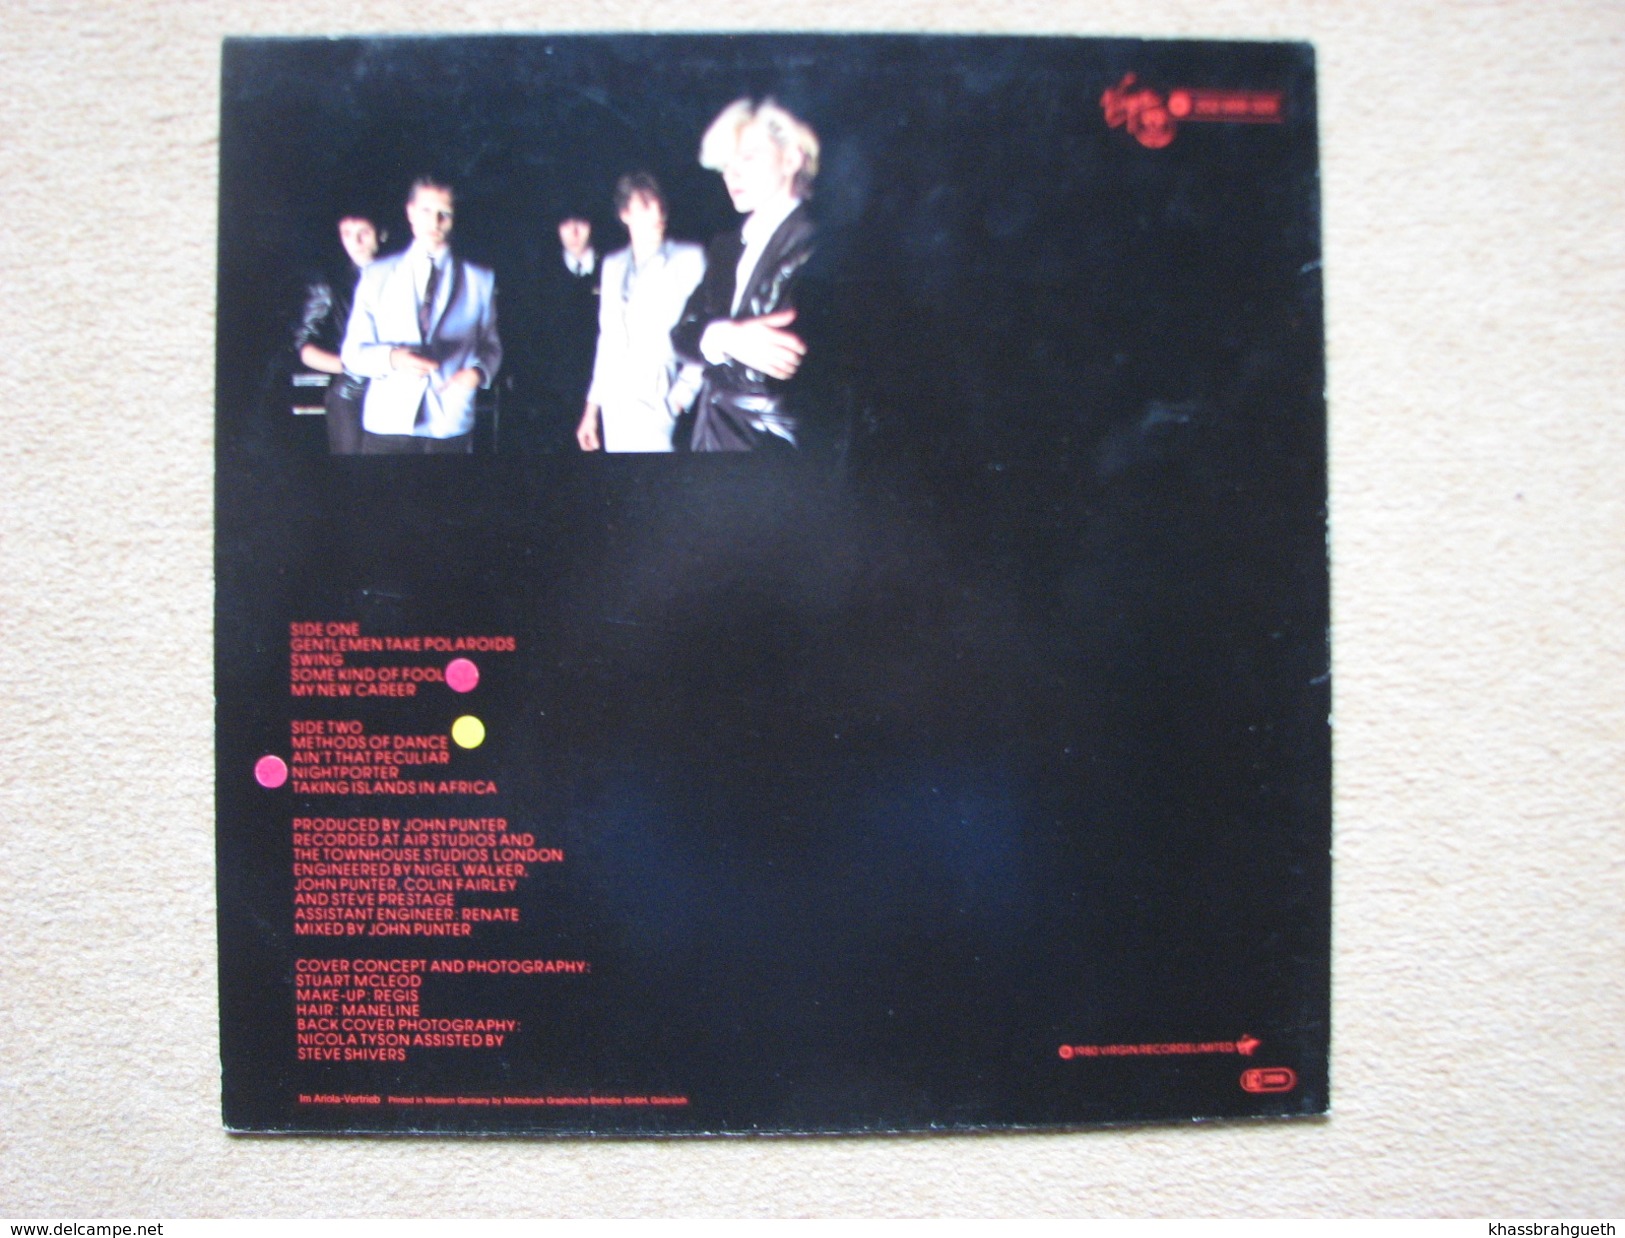 JAPAN (DAVID SYLVAIN) - GENTLEMEN TAKE POLAROIDS (LP) (VIRGIN 1980) - Rock